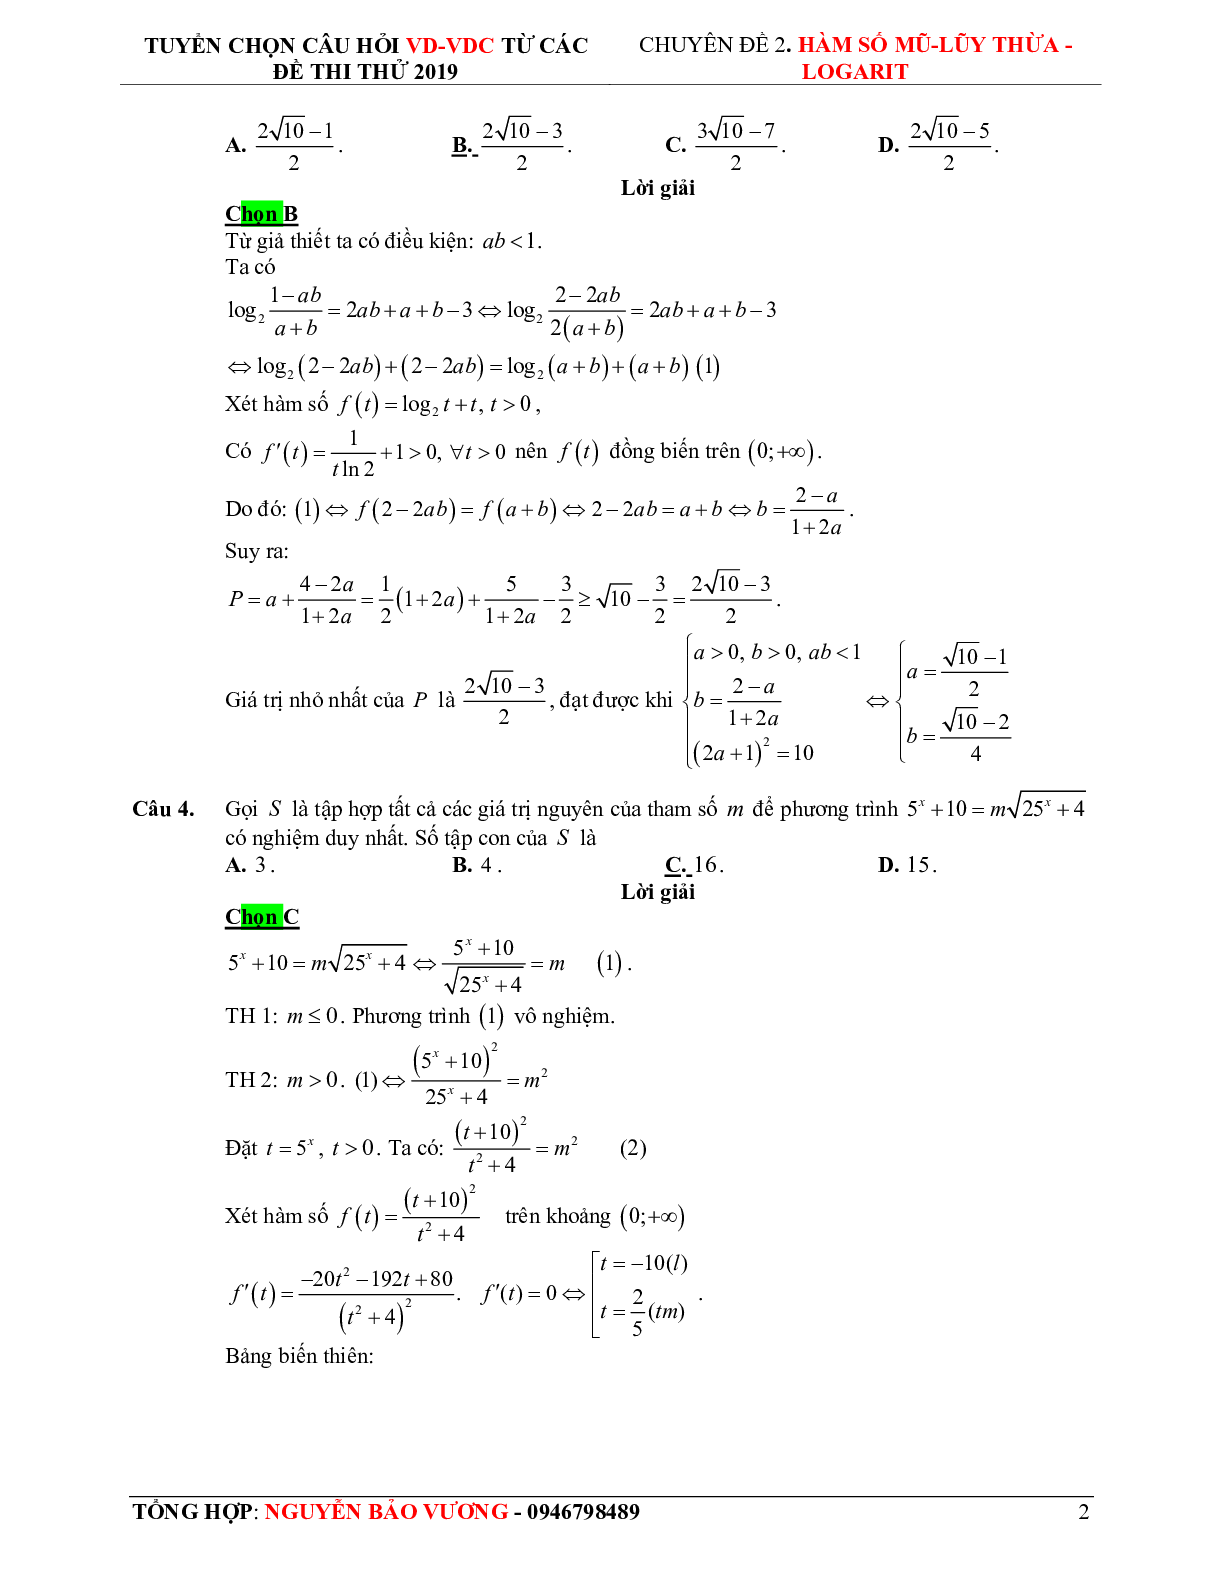 57 bài toán vận dụng - vận dụng cao hàm số mũ, logarit - có lời giải chi tiết (trang 10)